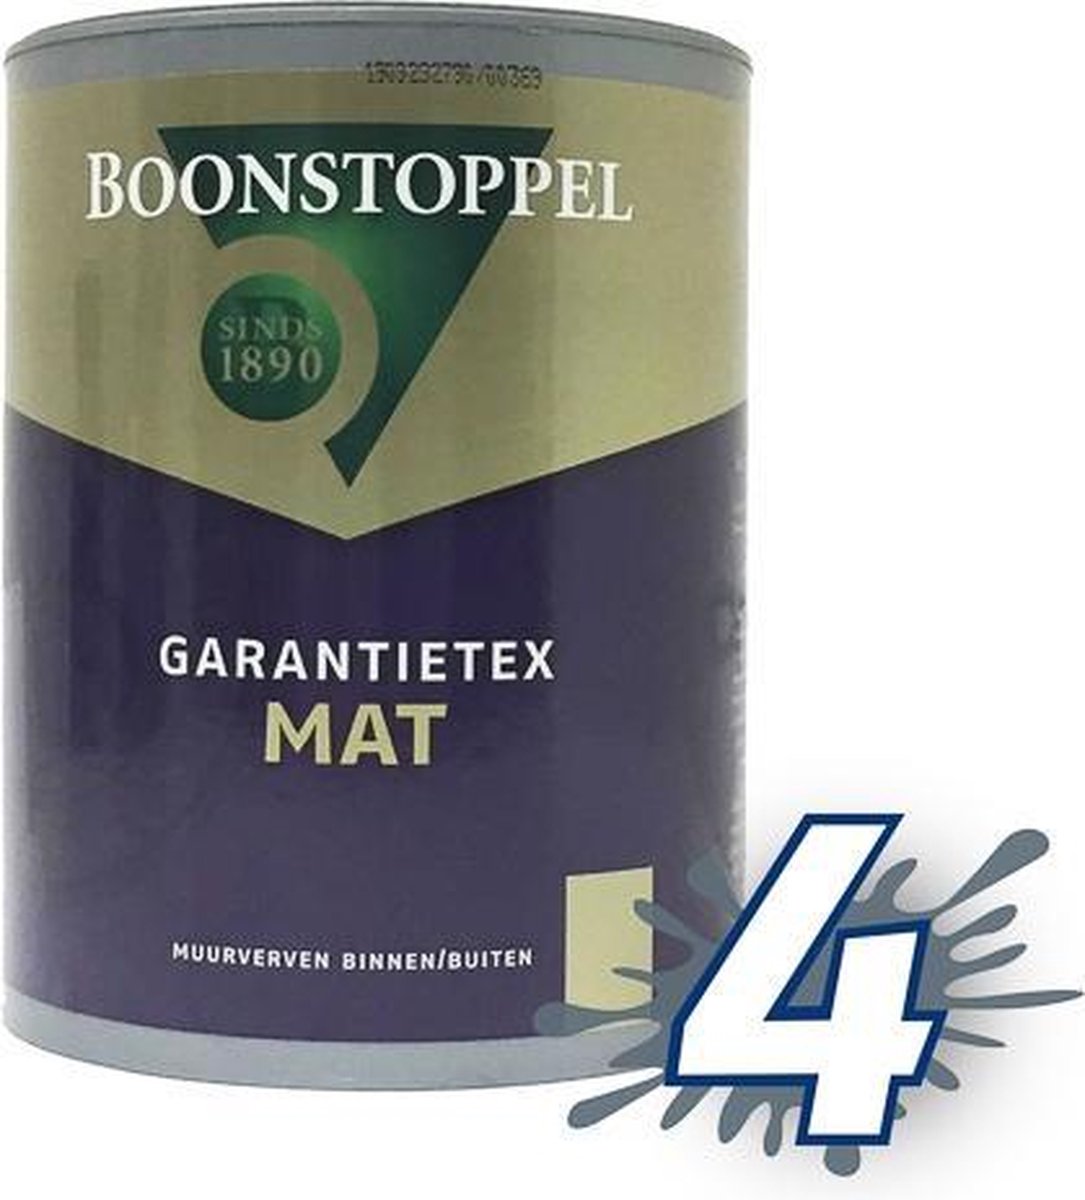 Boonstoppel Garantietex Mat 10 liter Lichte kleuren | bol.com